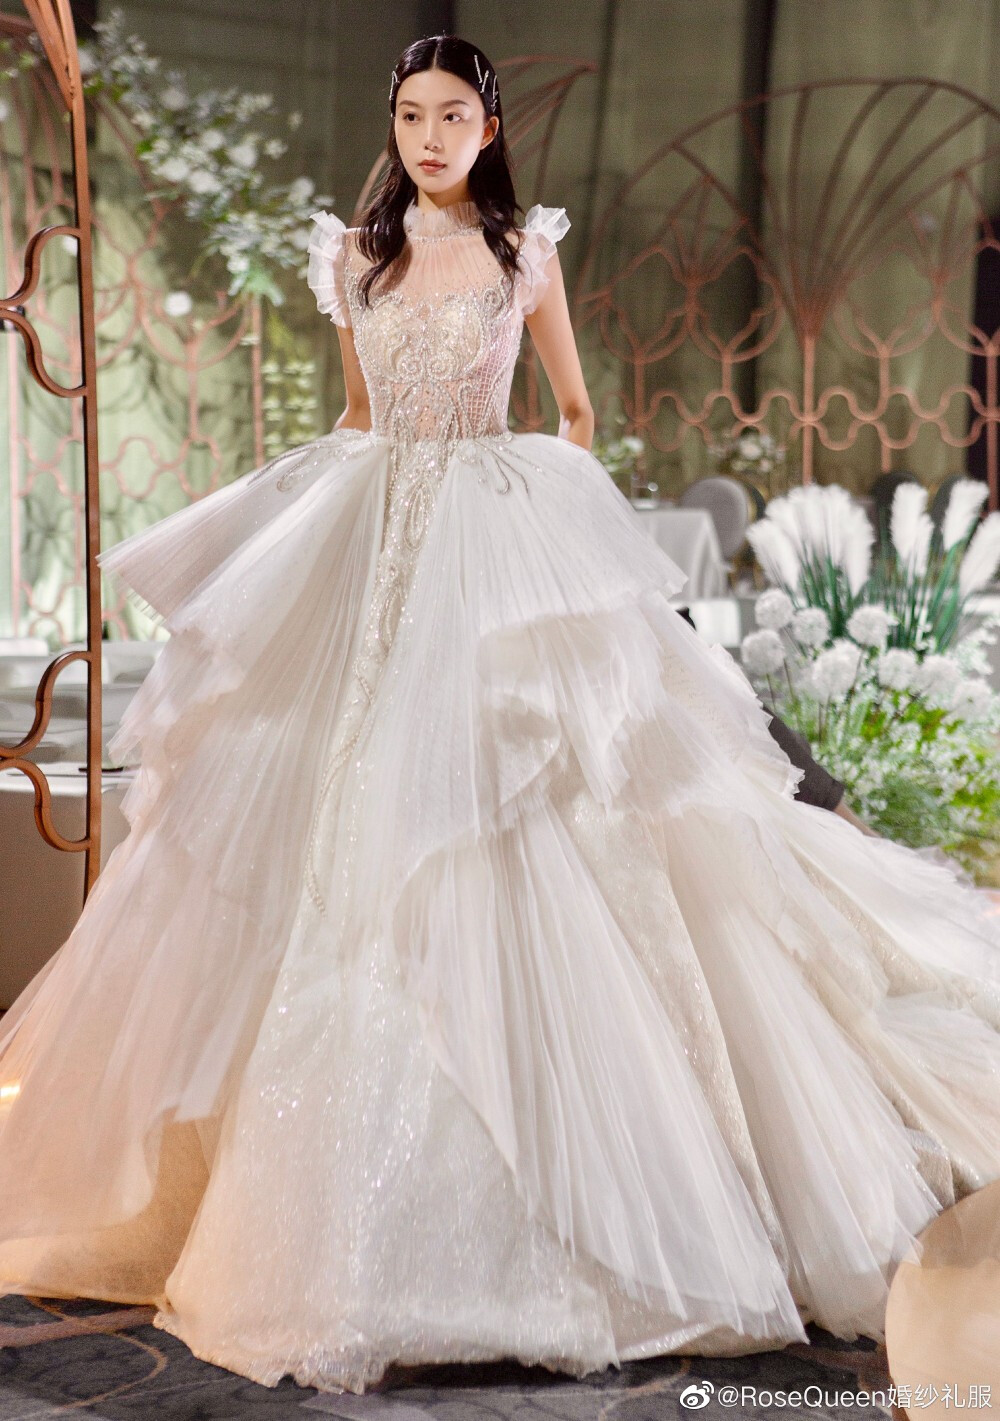 rosequeen婚纱礼服 图片来源于官方微.